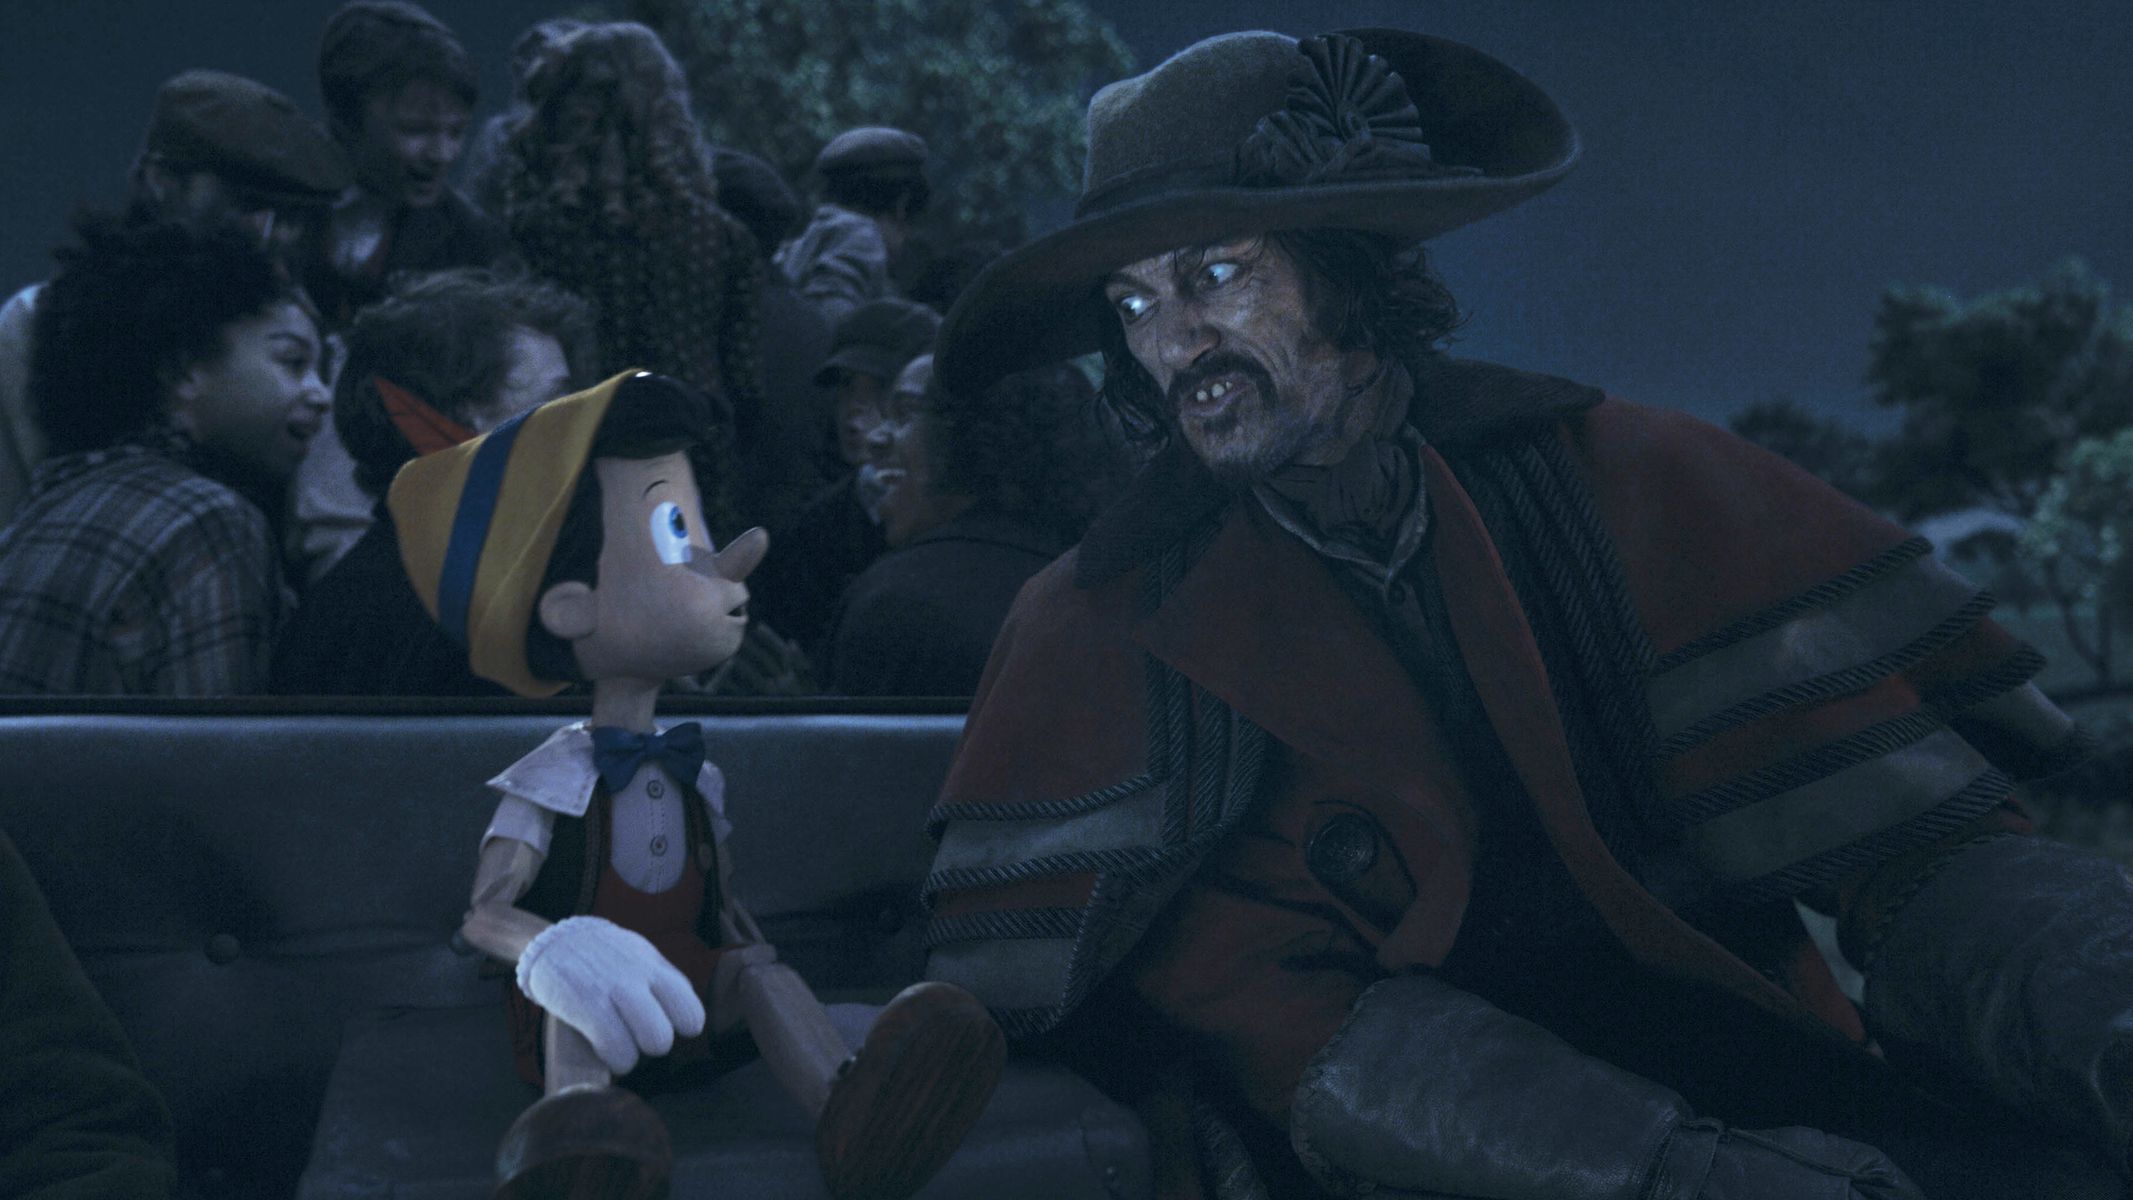 Pinocchio, 2022, film